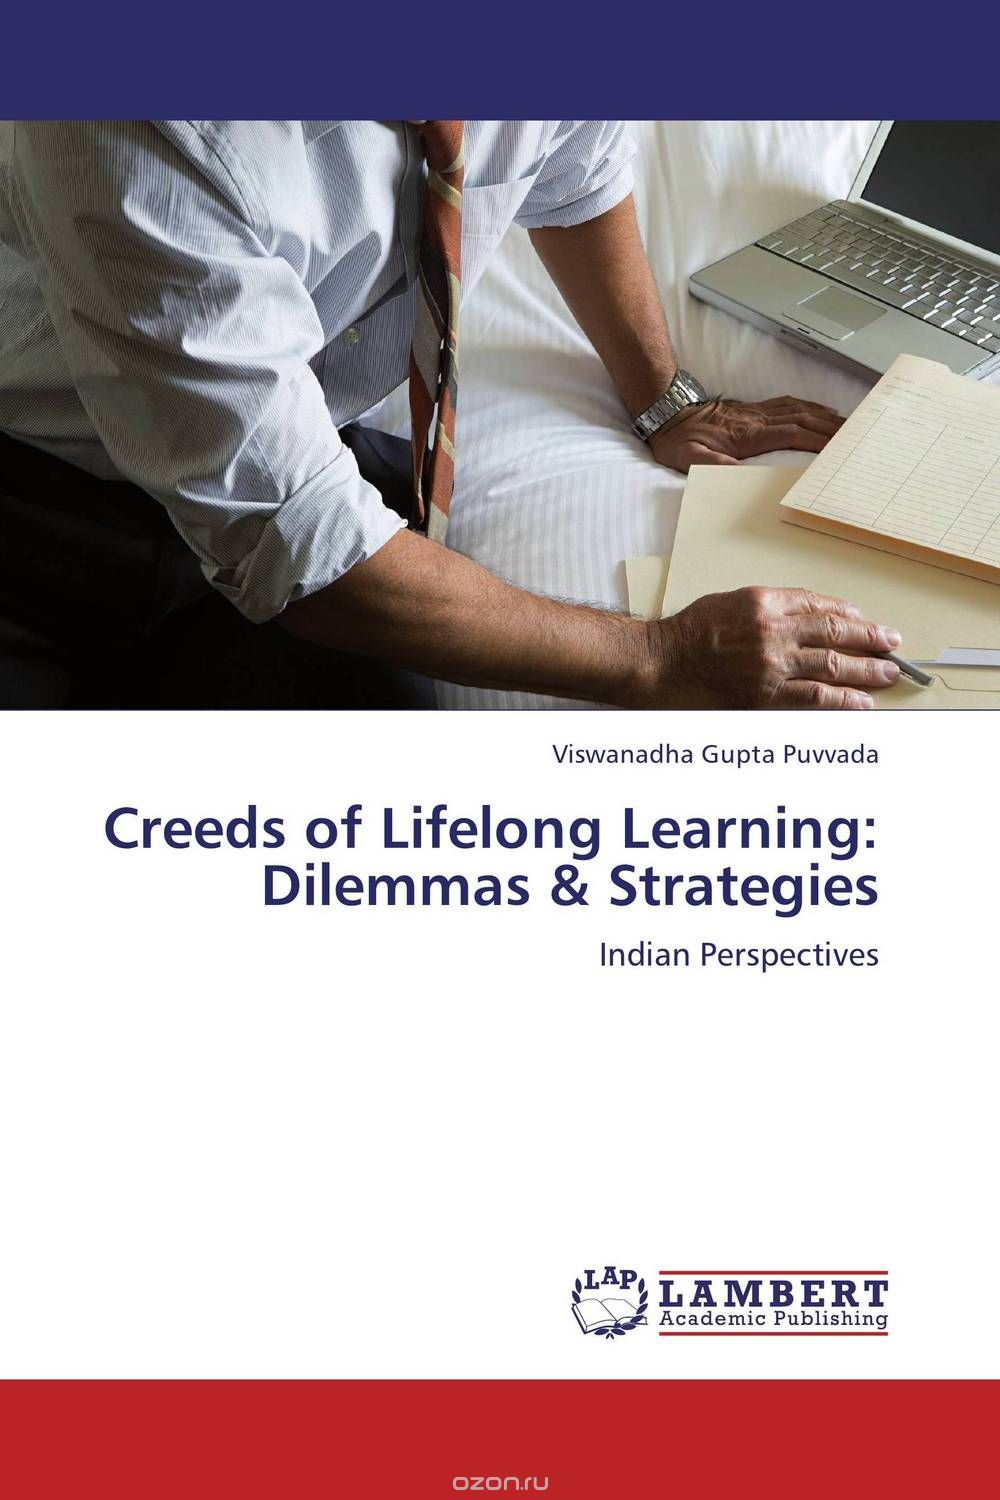 Скачать книгу "Creeds of Lifelong Learning: Dilemmas  & Strategies"